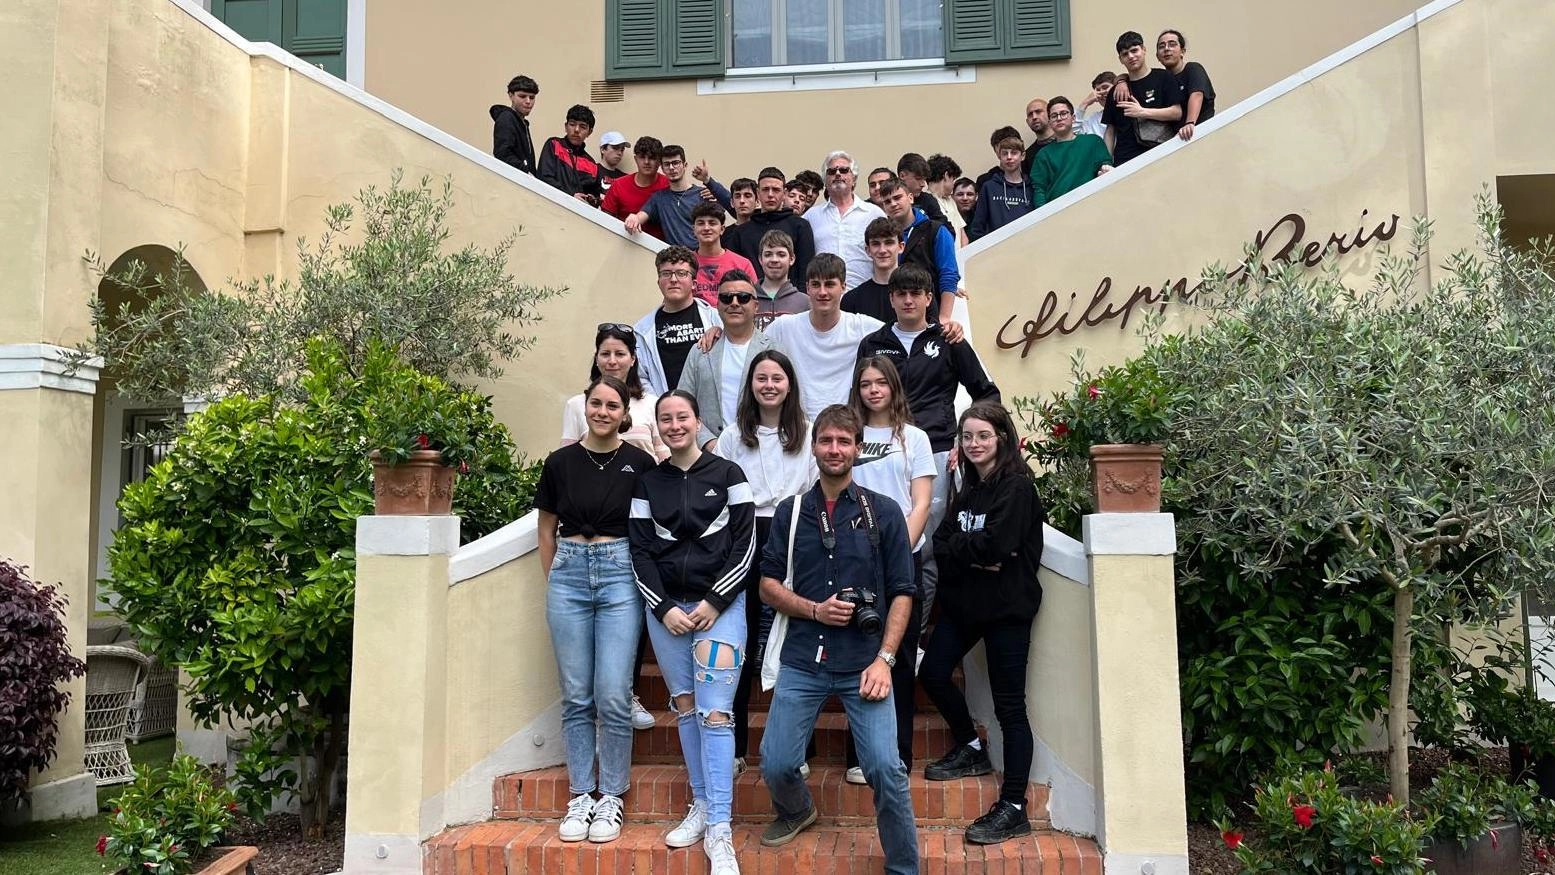 Giornata del "Made in Italy". Salov apre le porte di Villa Berio agli studenti dell’istituto agrario